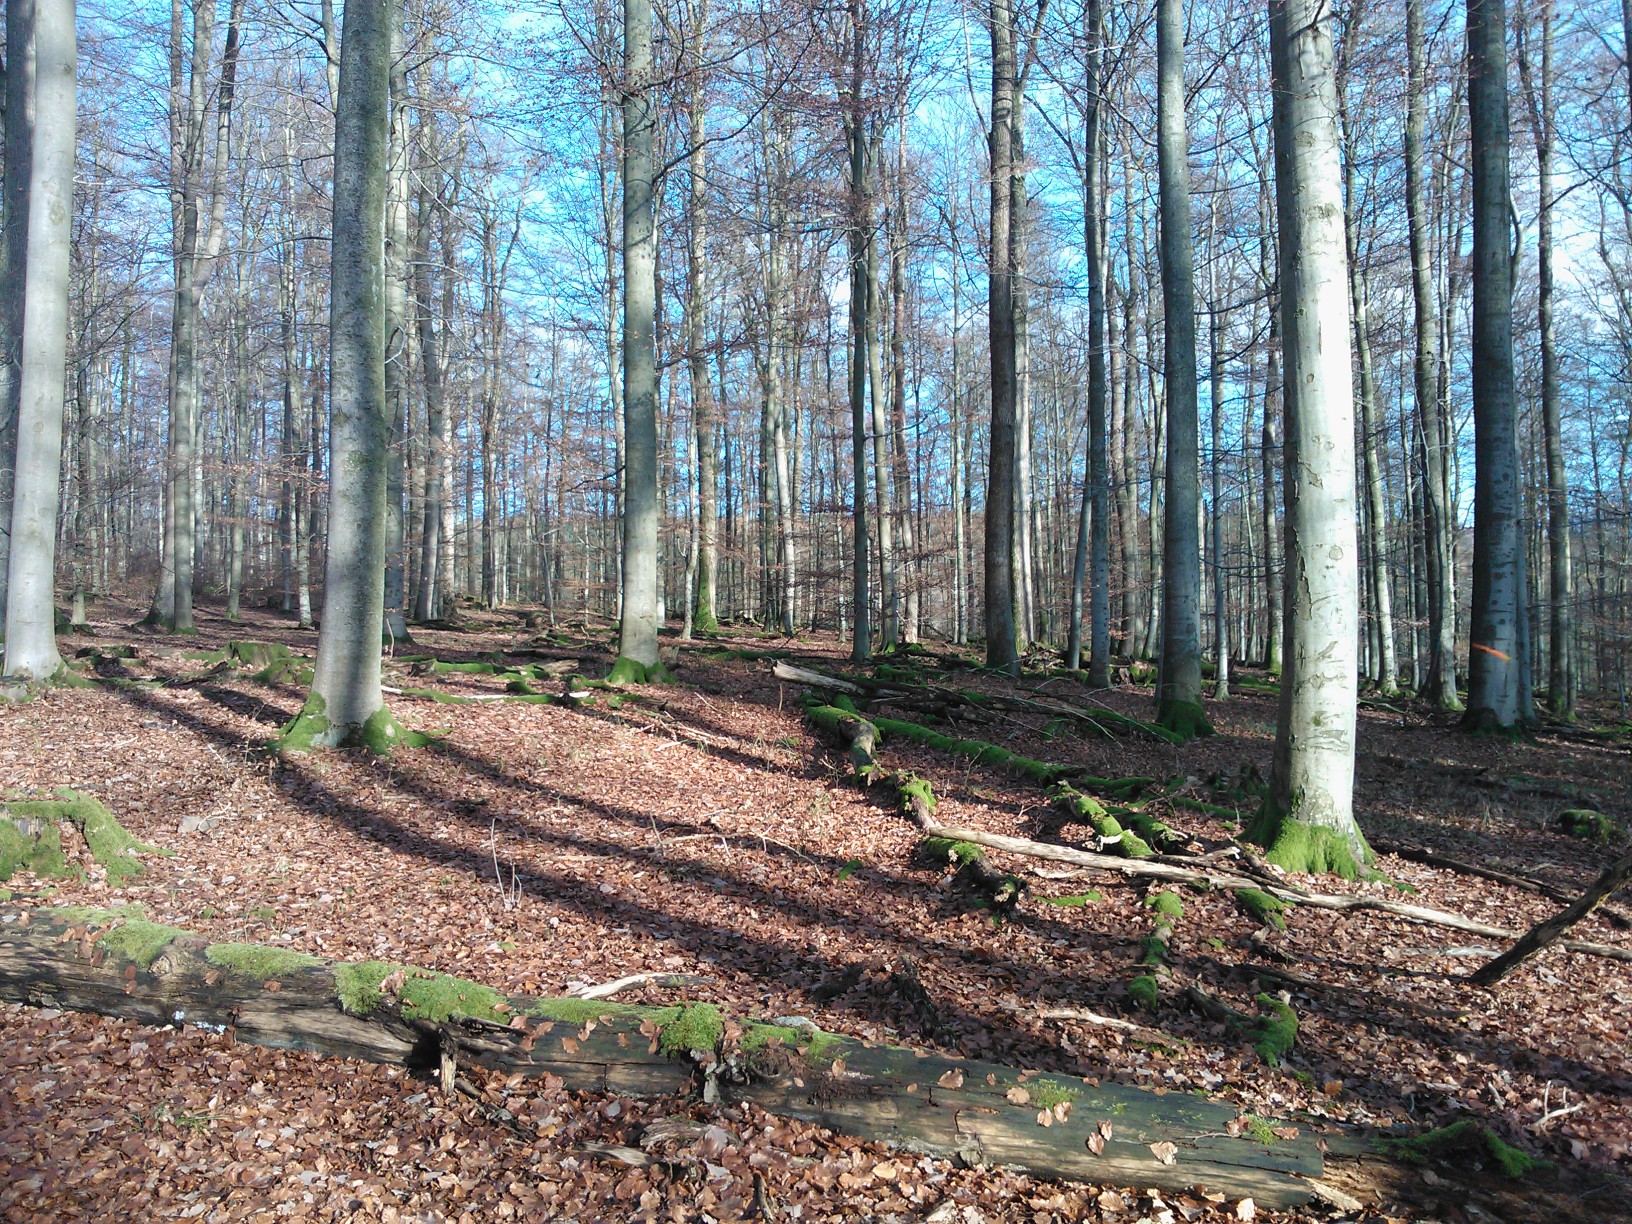 Saksan vanhat pyökkimetsät tarjoavat monenlaisia ekosysteemipalveluita, kuiten puutavaraa ja virkistystä. Kuva: Kai Lintunen